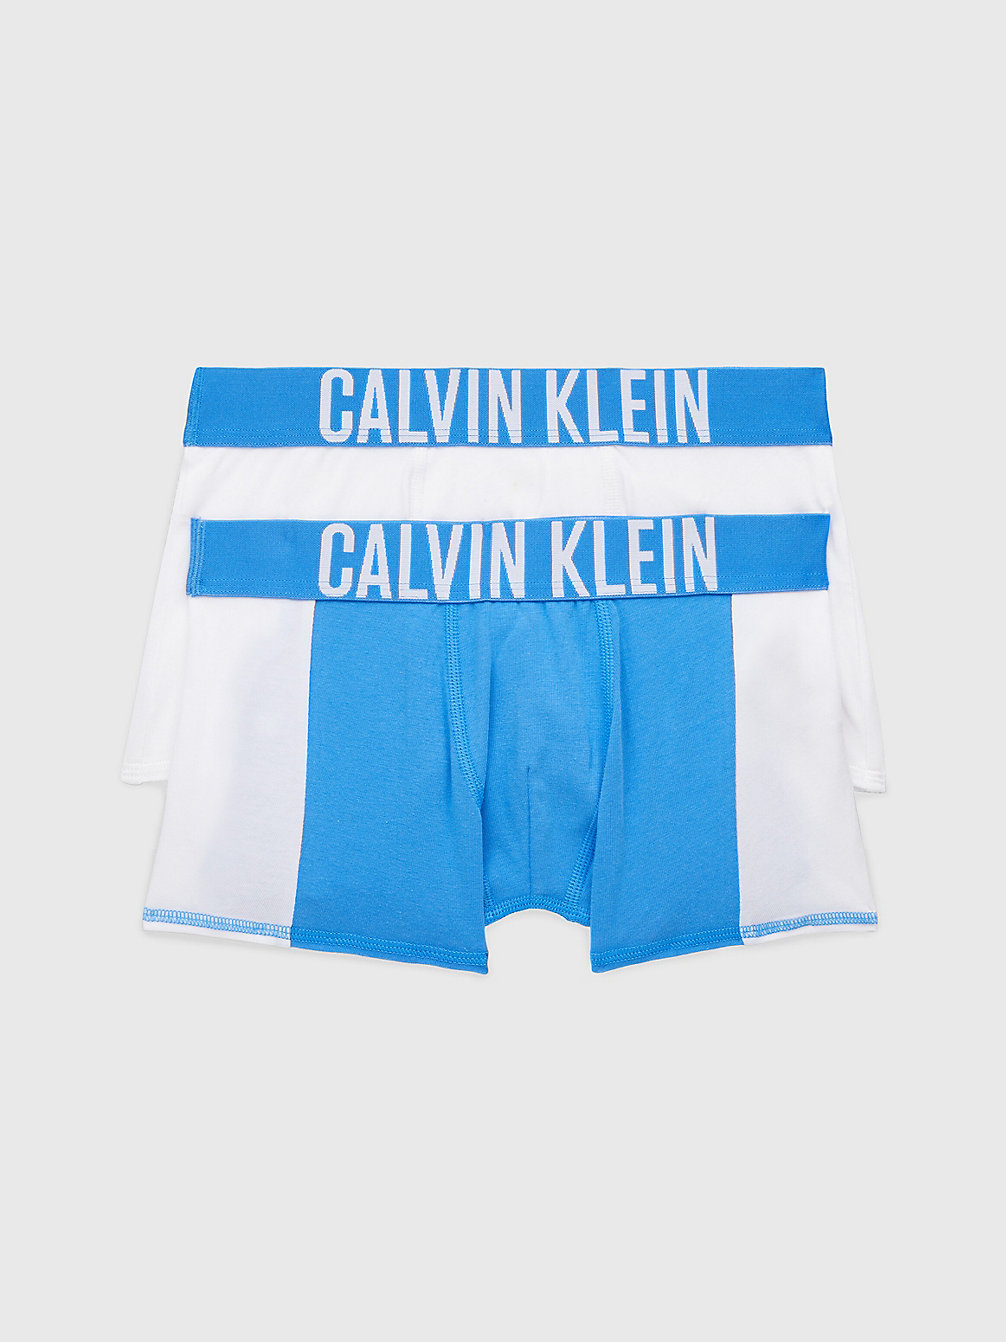 ELECTRICAQUA/PVHWHITE 2er-Pack Boxershorts Für Jungen – Intense Power undefined boys Calvin Klein